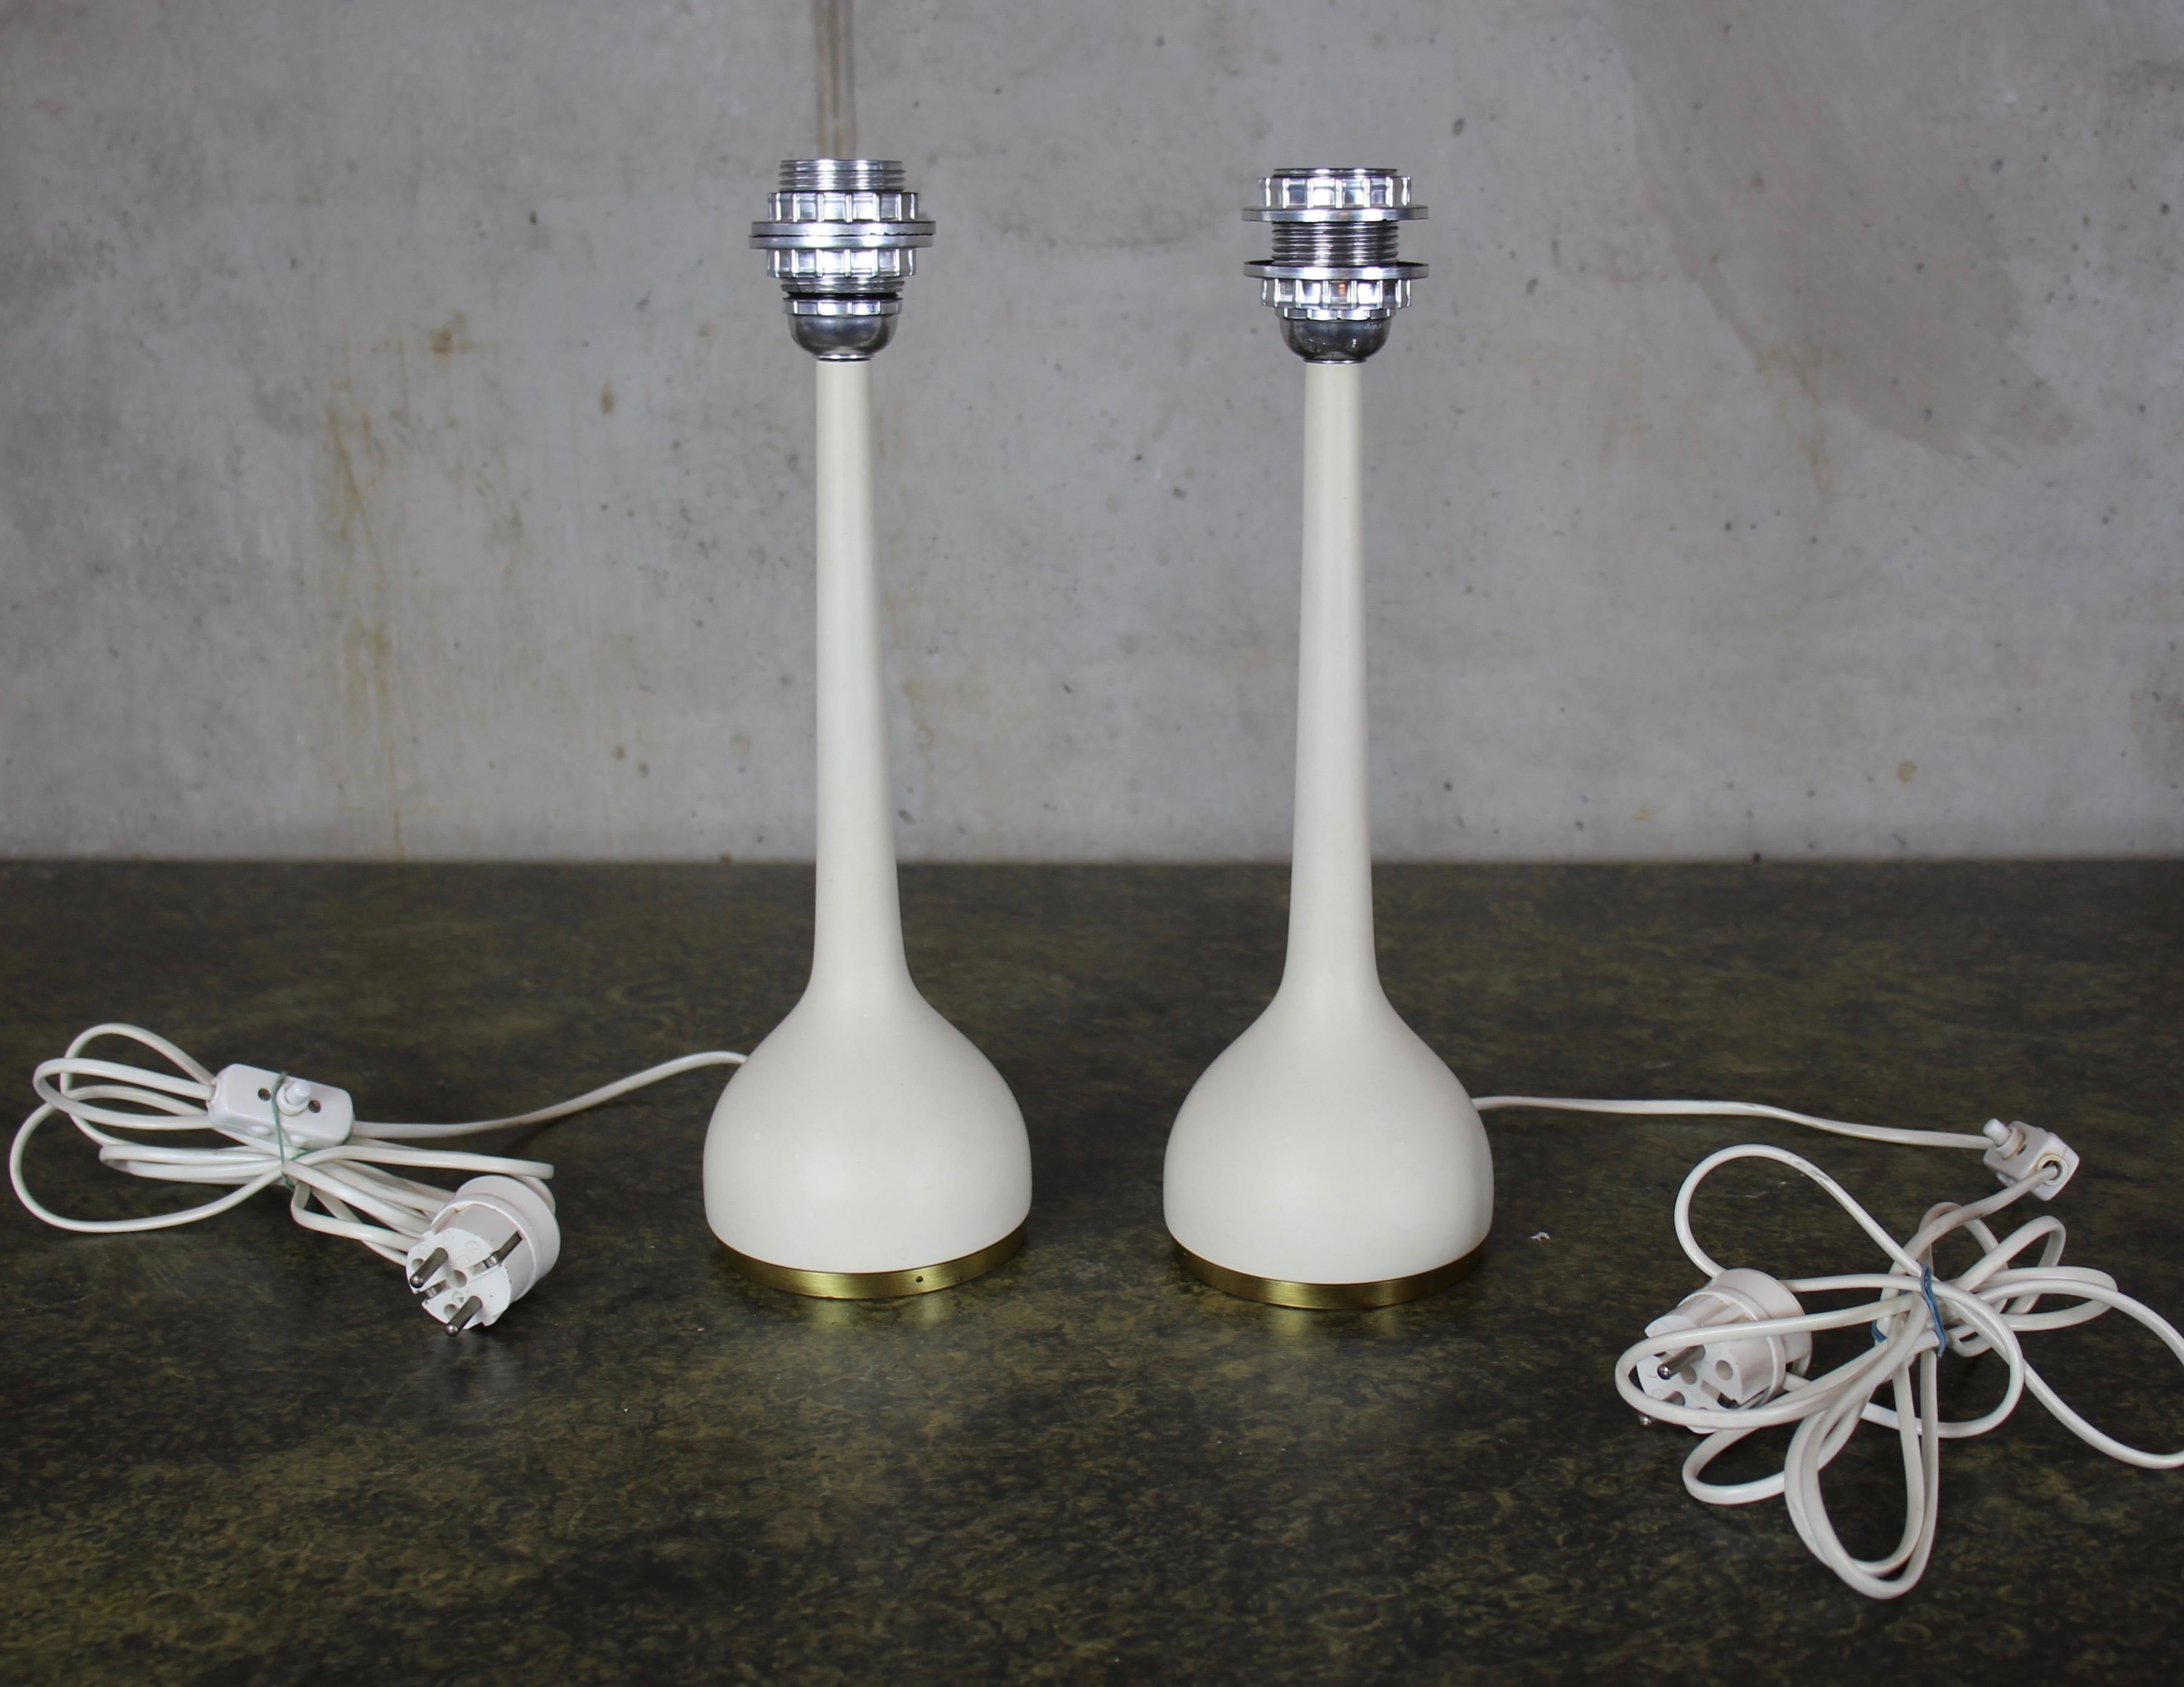 Diese Tischlampen wurden in den 1960er Jahren von Hans-Agne Jakobsson entworfen und von Hans Agne Jakobsson AB in Markaryd, Schweden, hergestellt. Sie besteht aus einem weiß lackierten Sockel mit originalen Stoffschirmen. Sowohl das Becken als auch